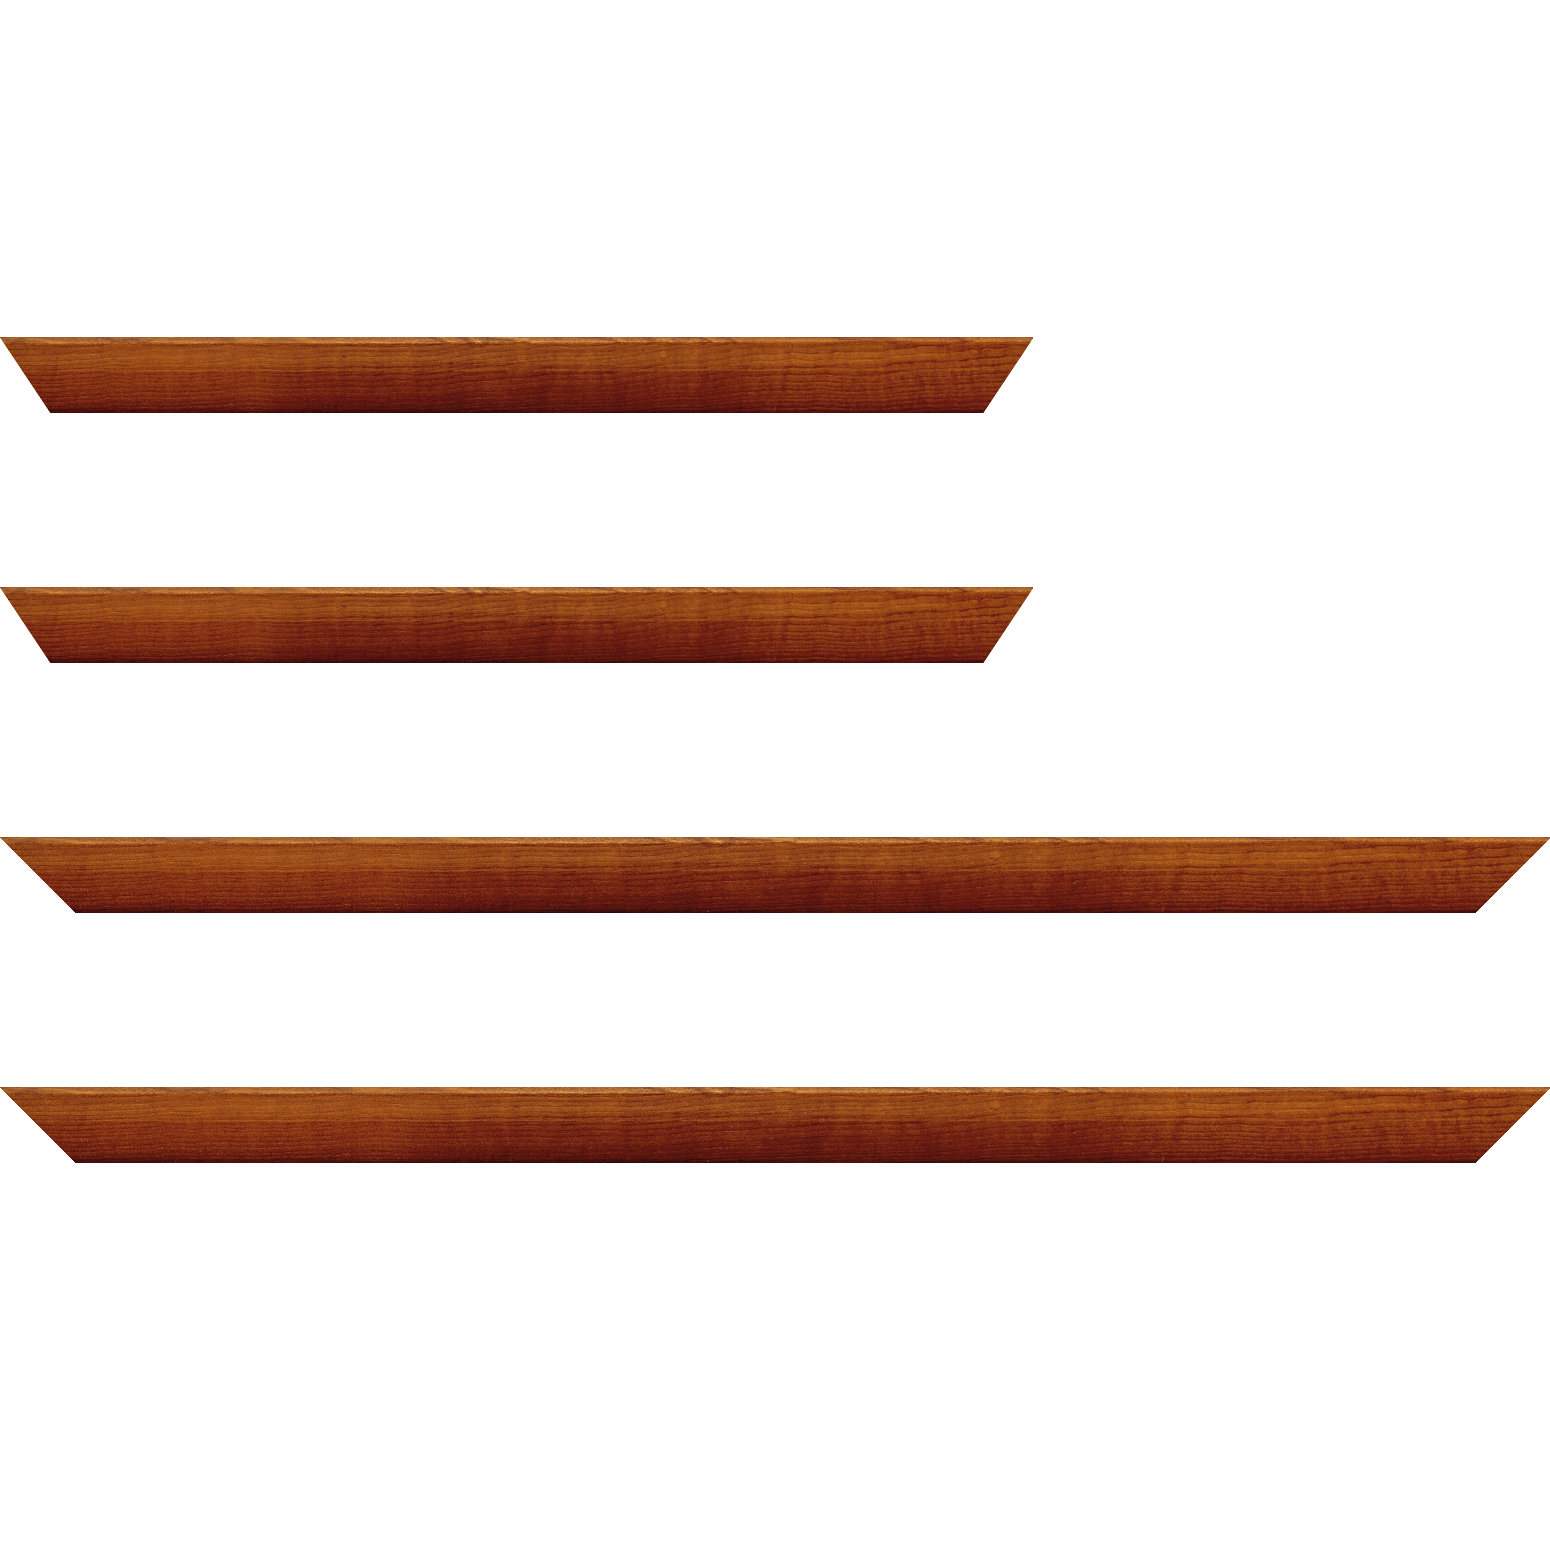 Baguette bois profil arrondi en pente plongeant largeur 2.4cm couleur marron miel finition vernis brillant,veine du bois  apparent (pin) , - 34x40